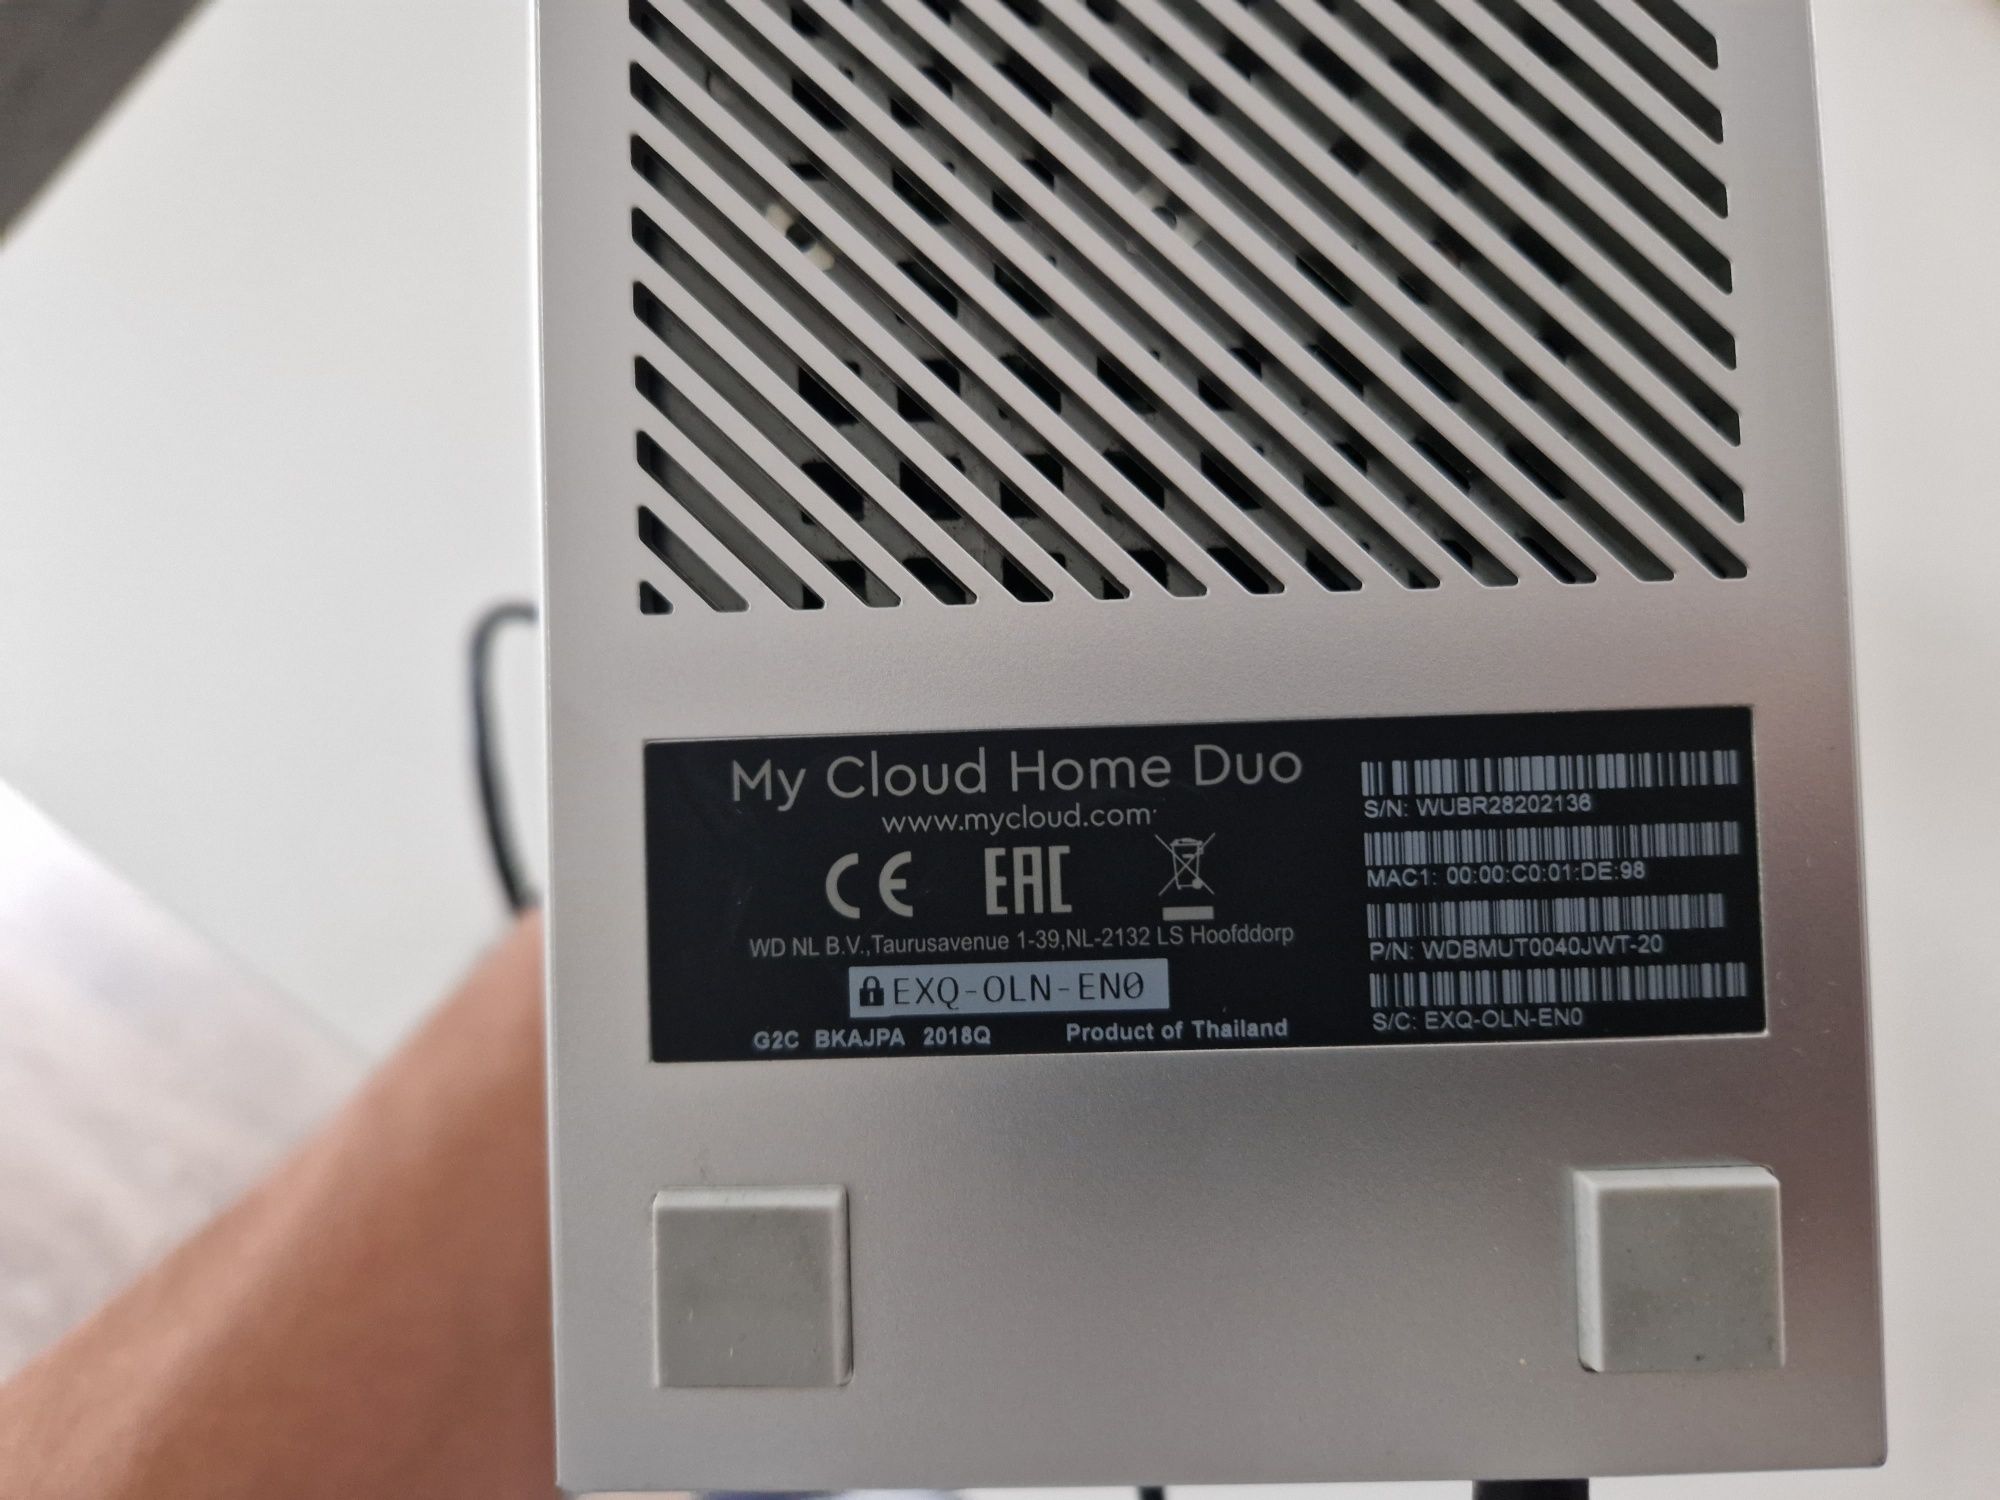 Cloud home duo 4 TB